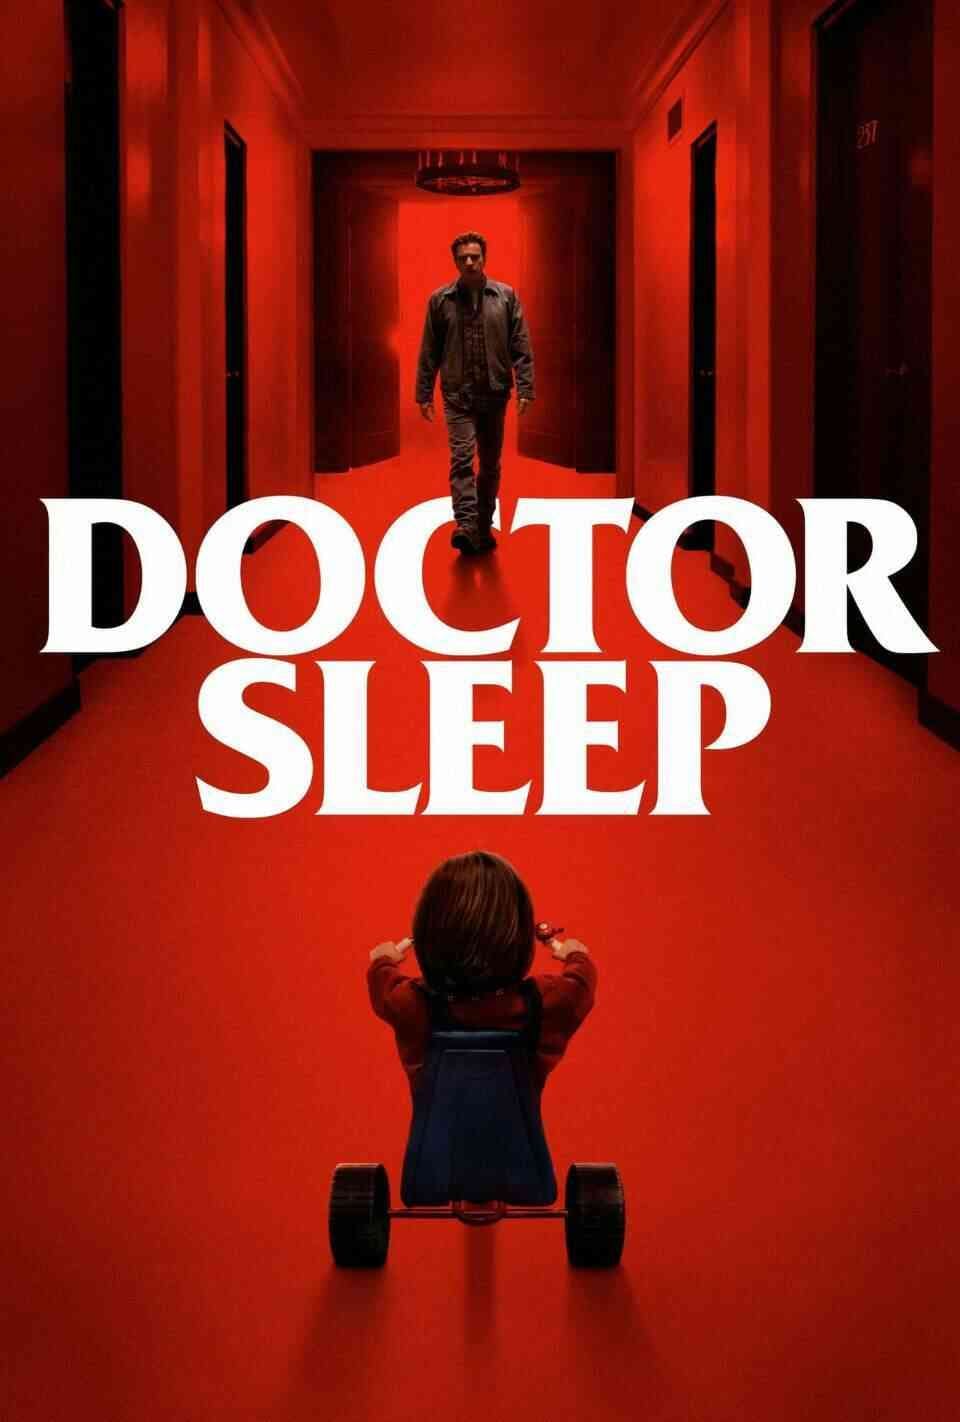 Read Doctor Sleep screenplay.